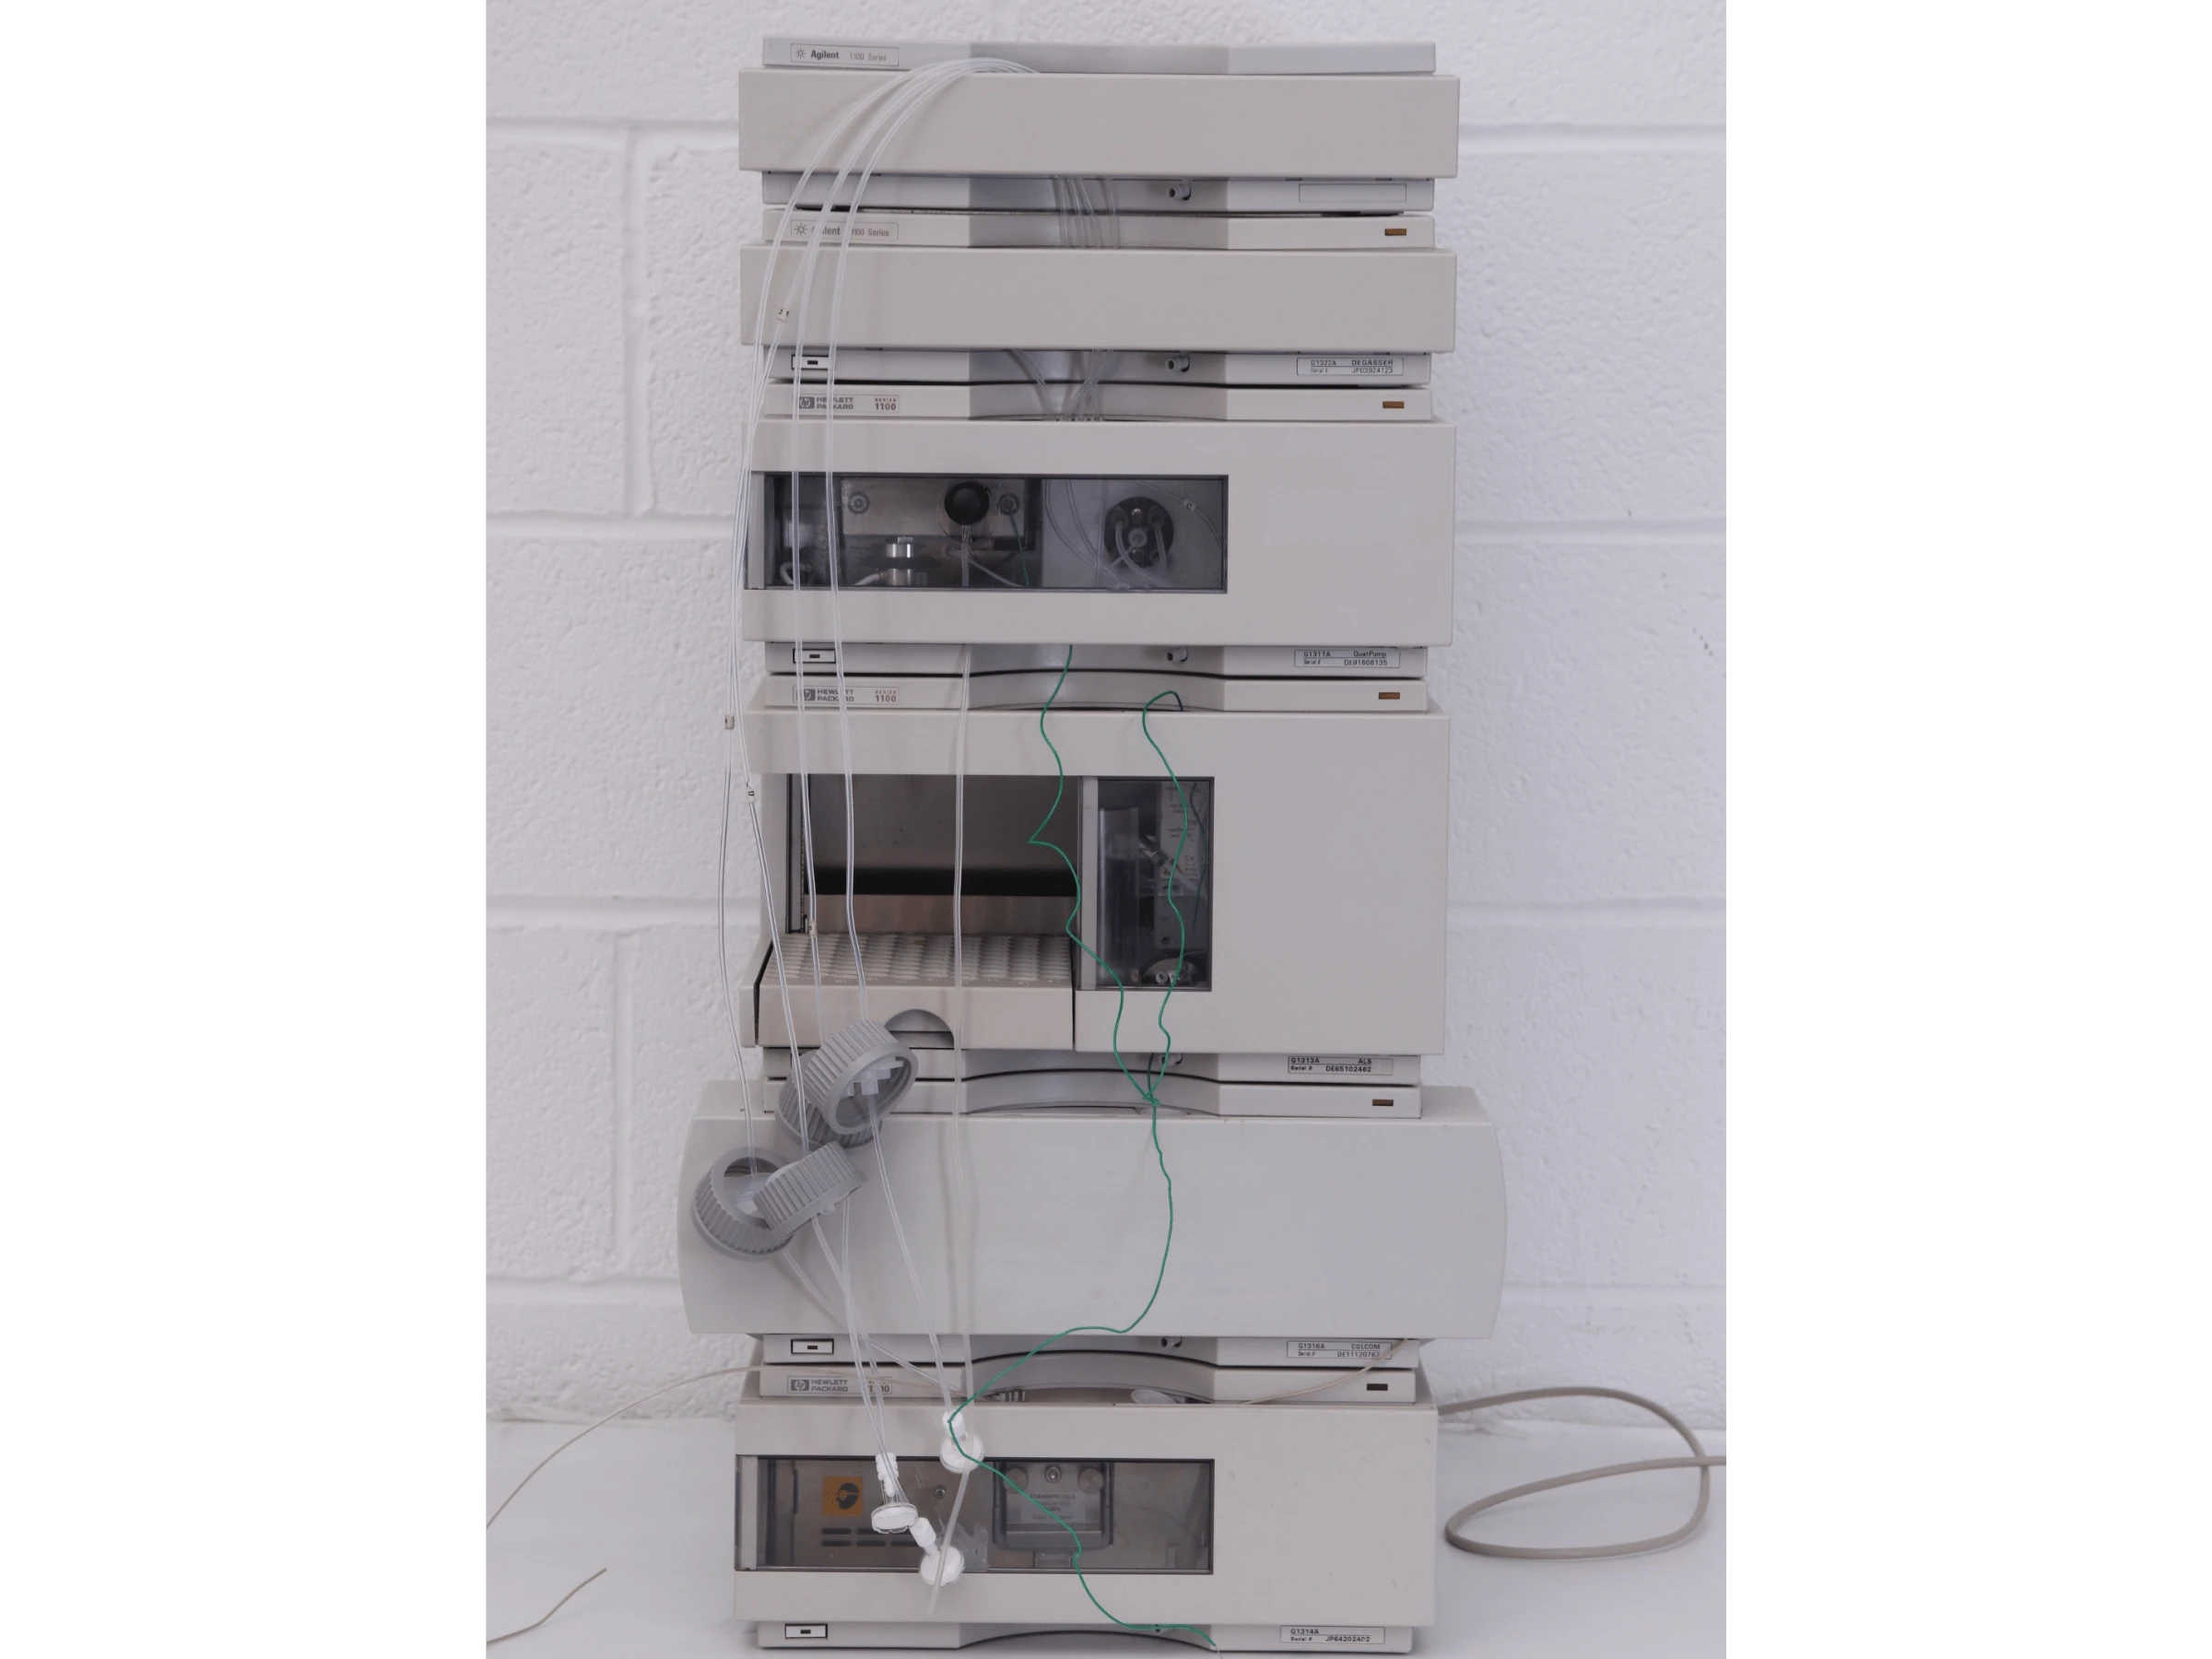 Agilent 1100 Series HPLC System – Degasser, Quat Pump, ALS, COLCOM & UV Detector